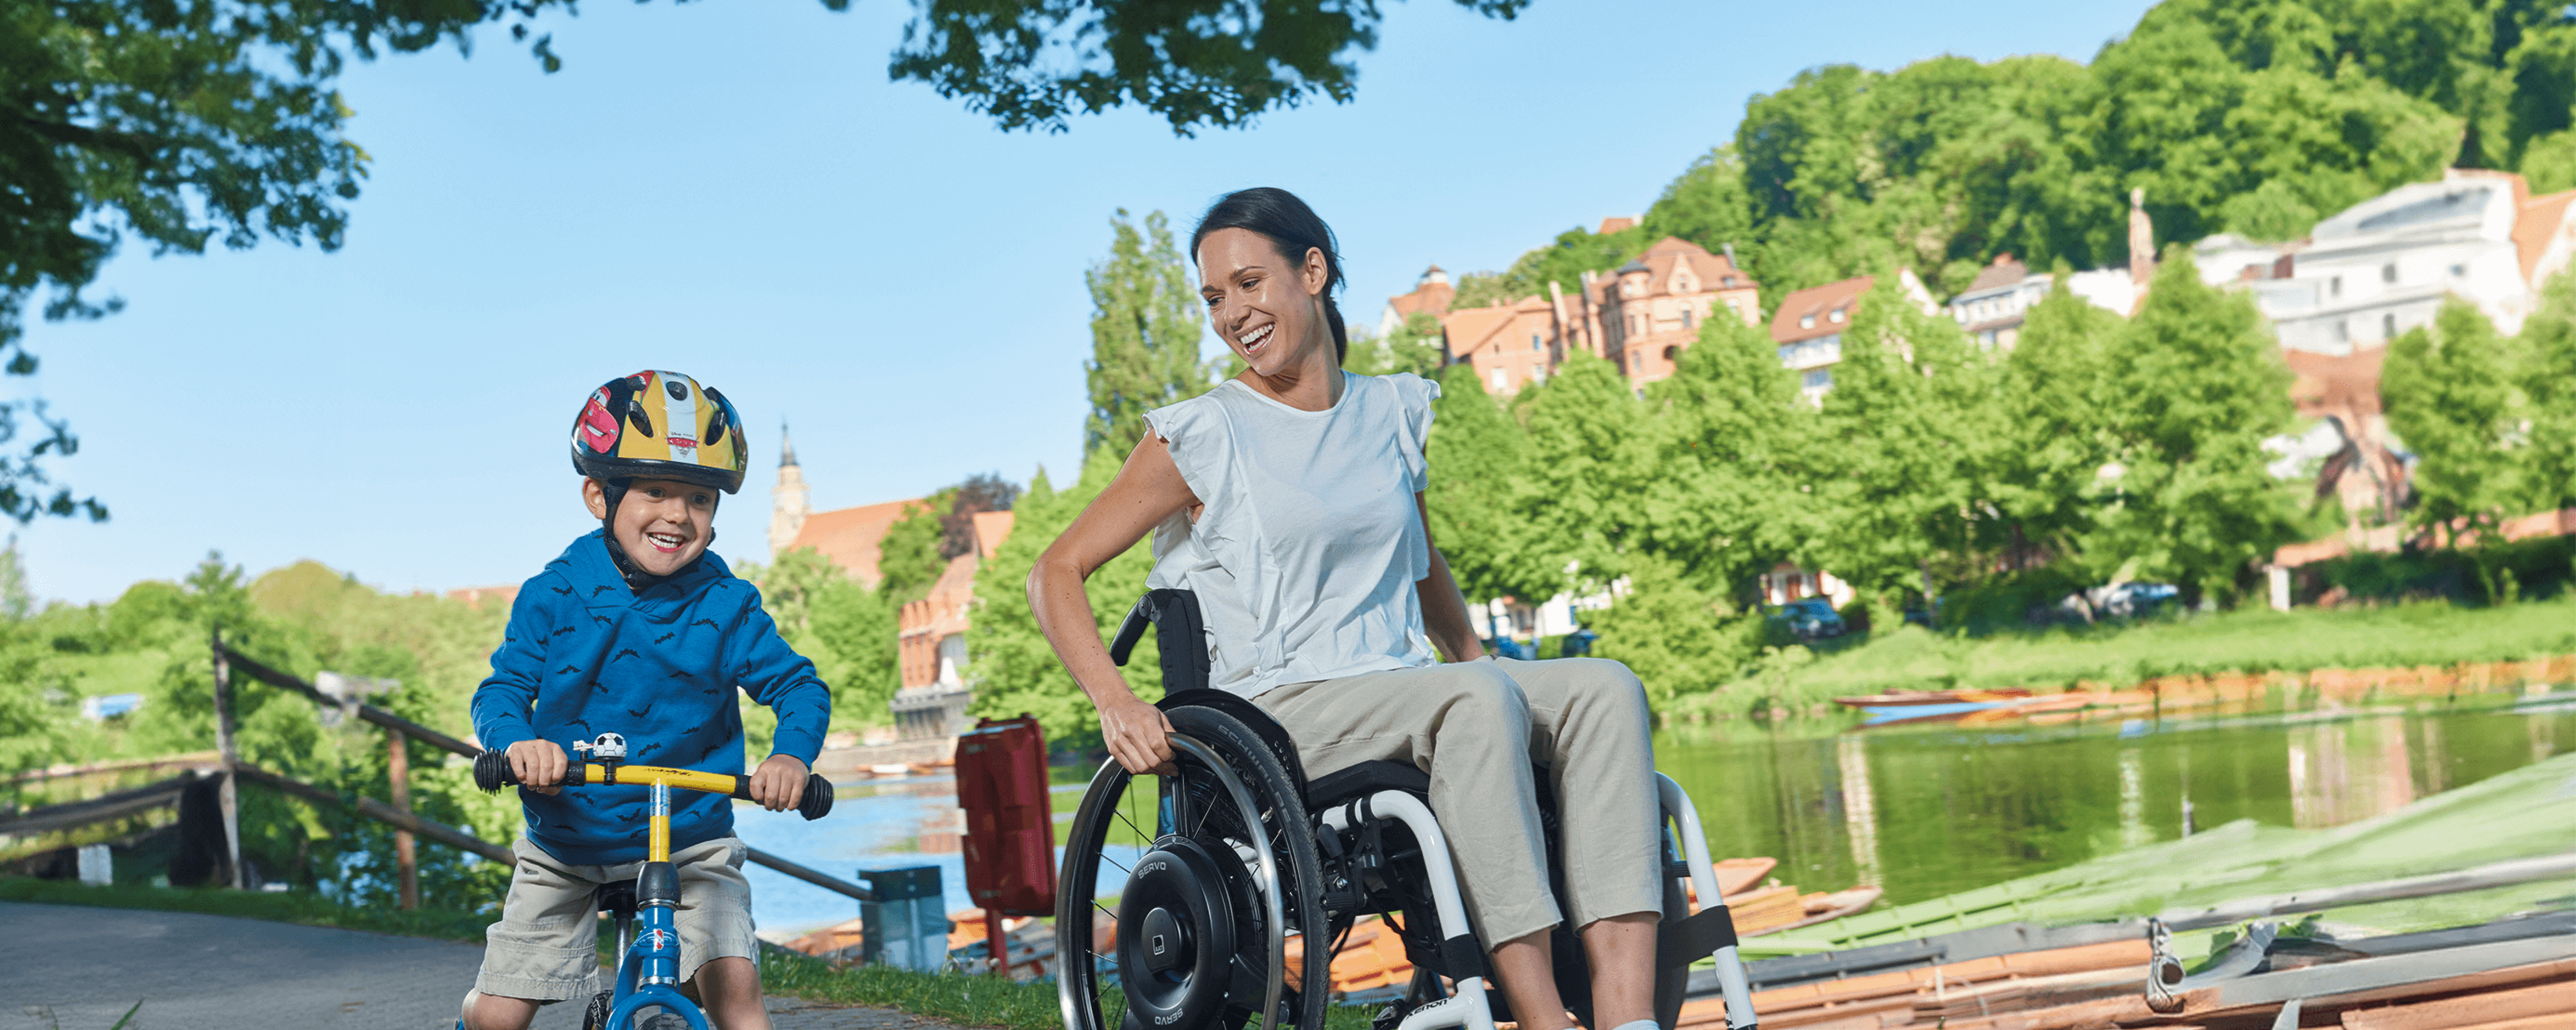 Eine junge Frau im Rollstuhl nutzt einen schwarzen Radnabenantrieb zur Restkraftverstärkung und fährt mit ihrem Sohn auf einem Cityroller an einem Fluss entlang.